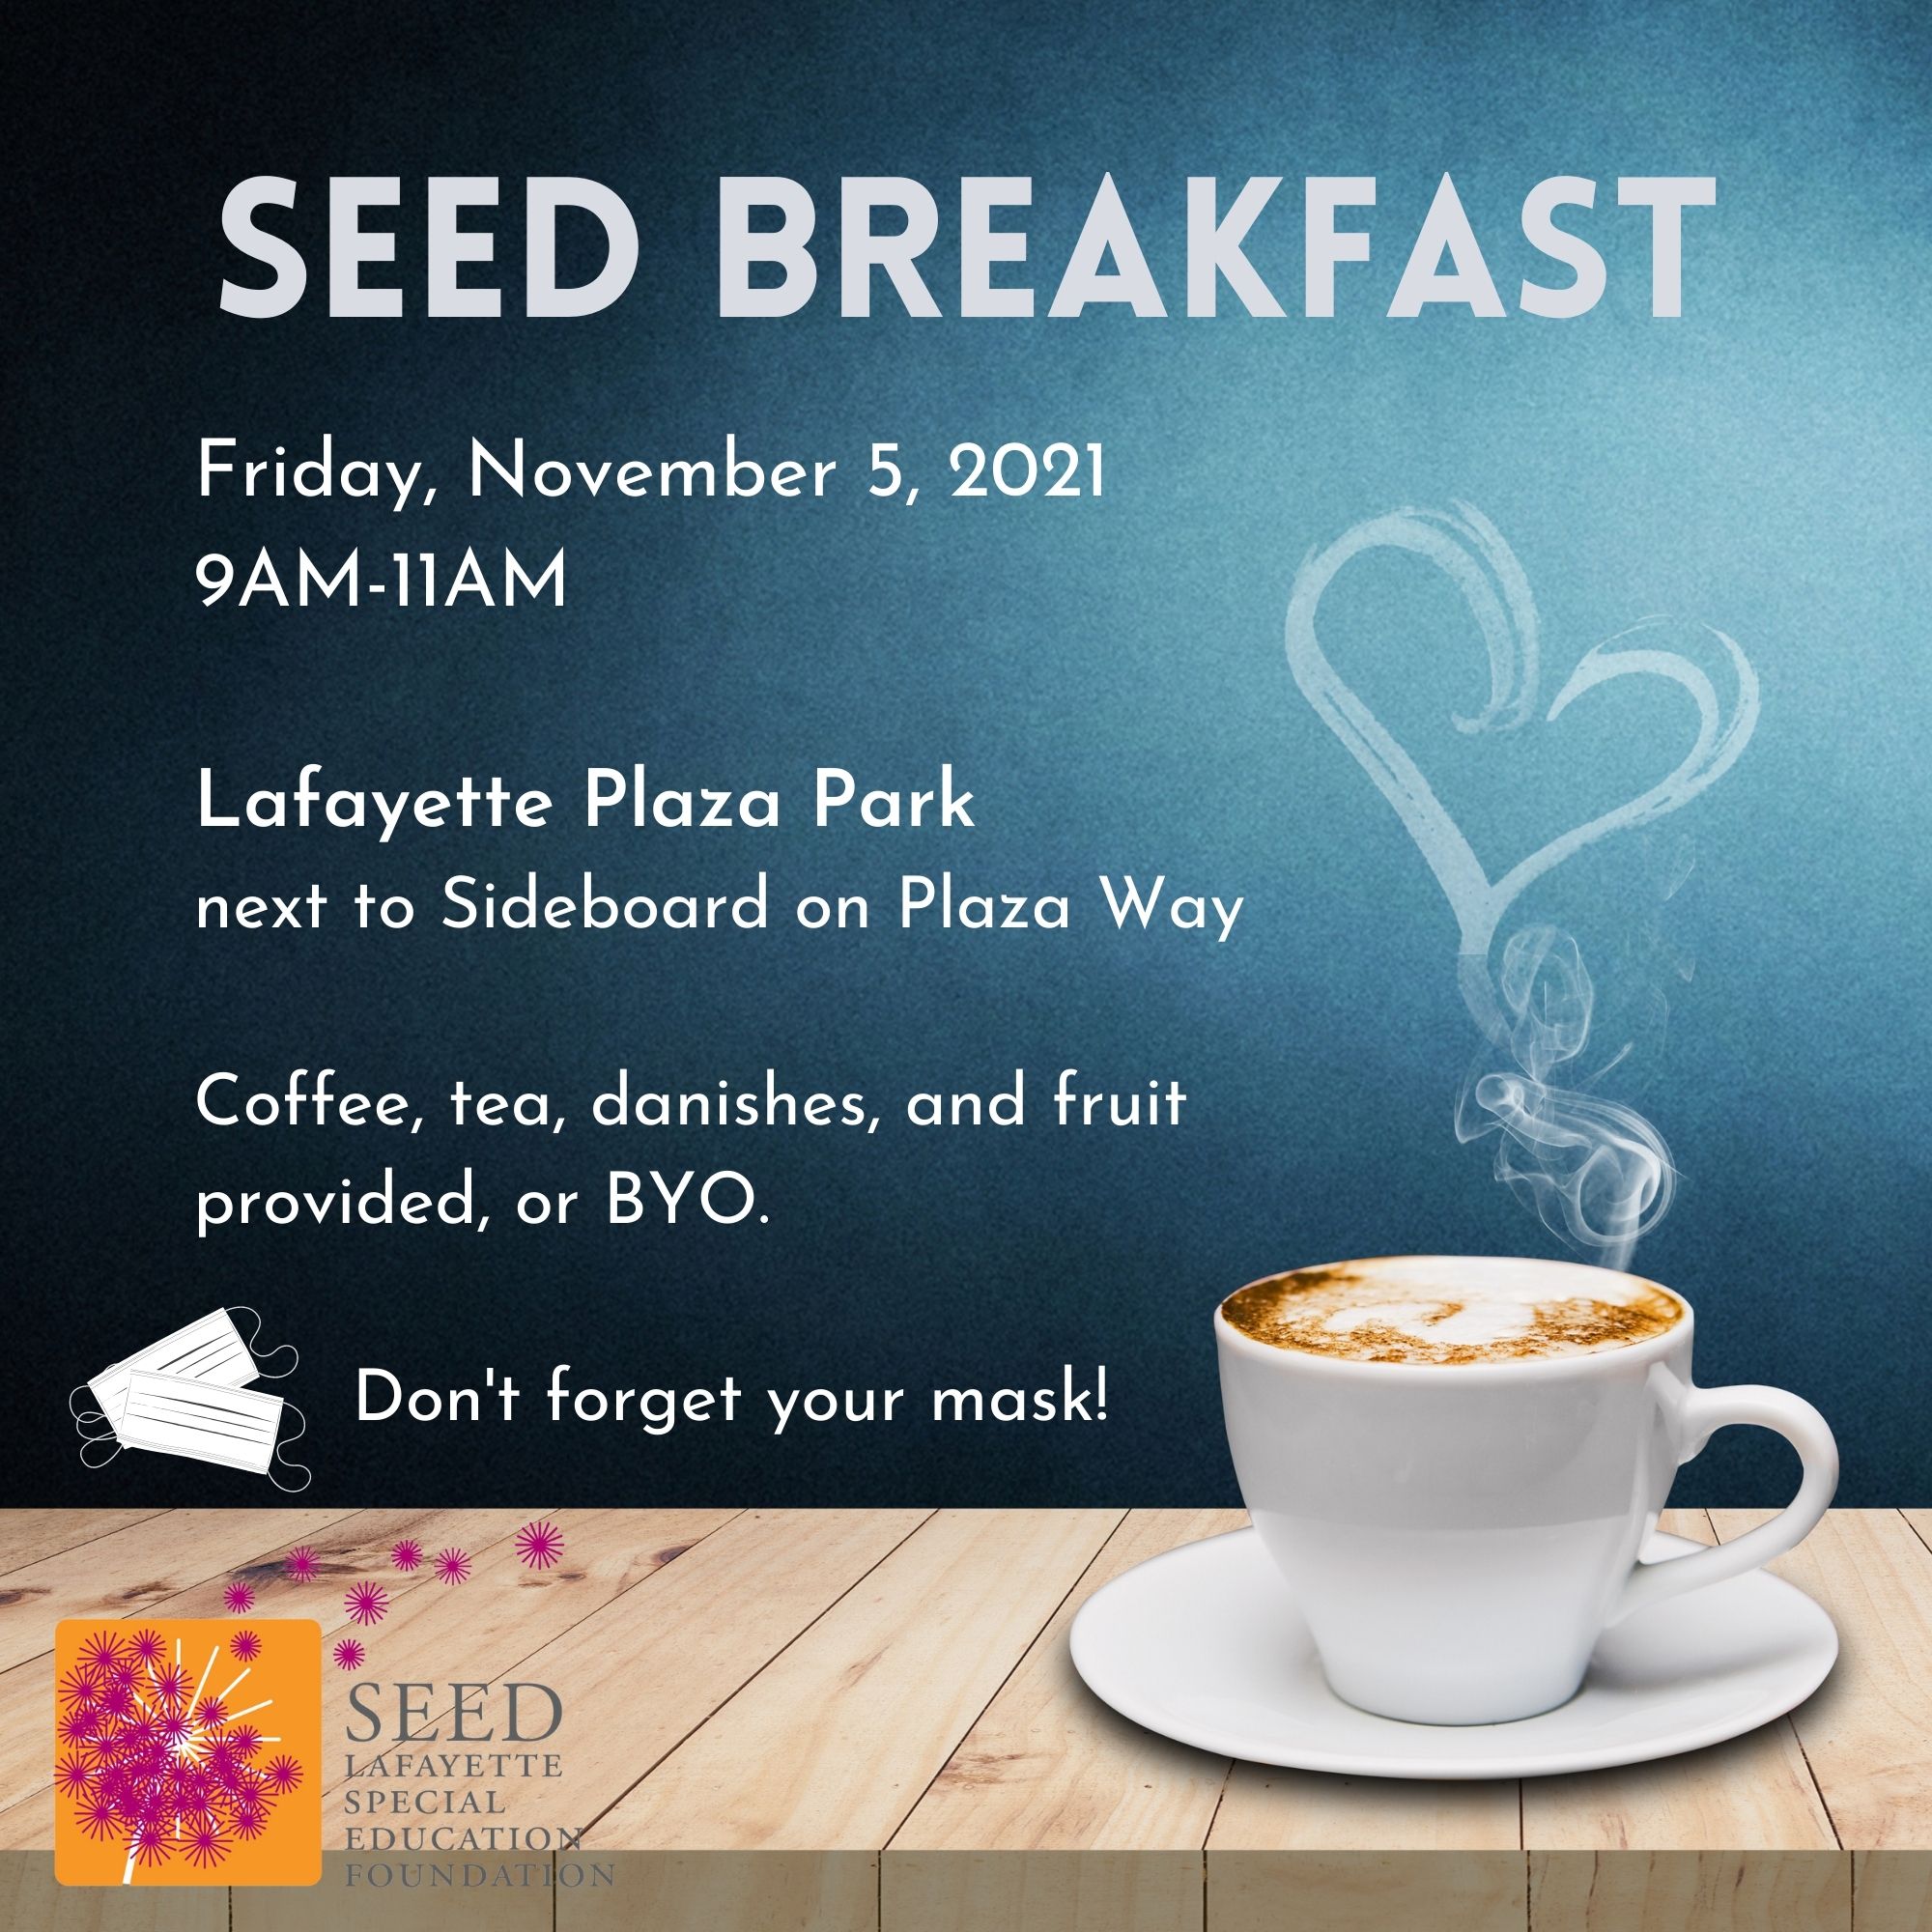 SEED-Breakfast-Nov 5, 2021